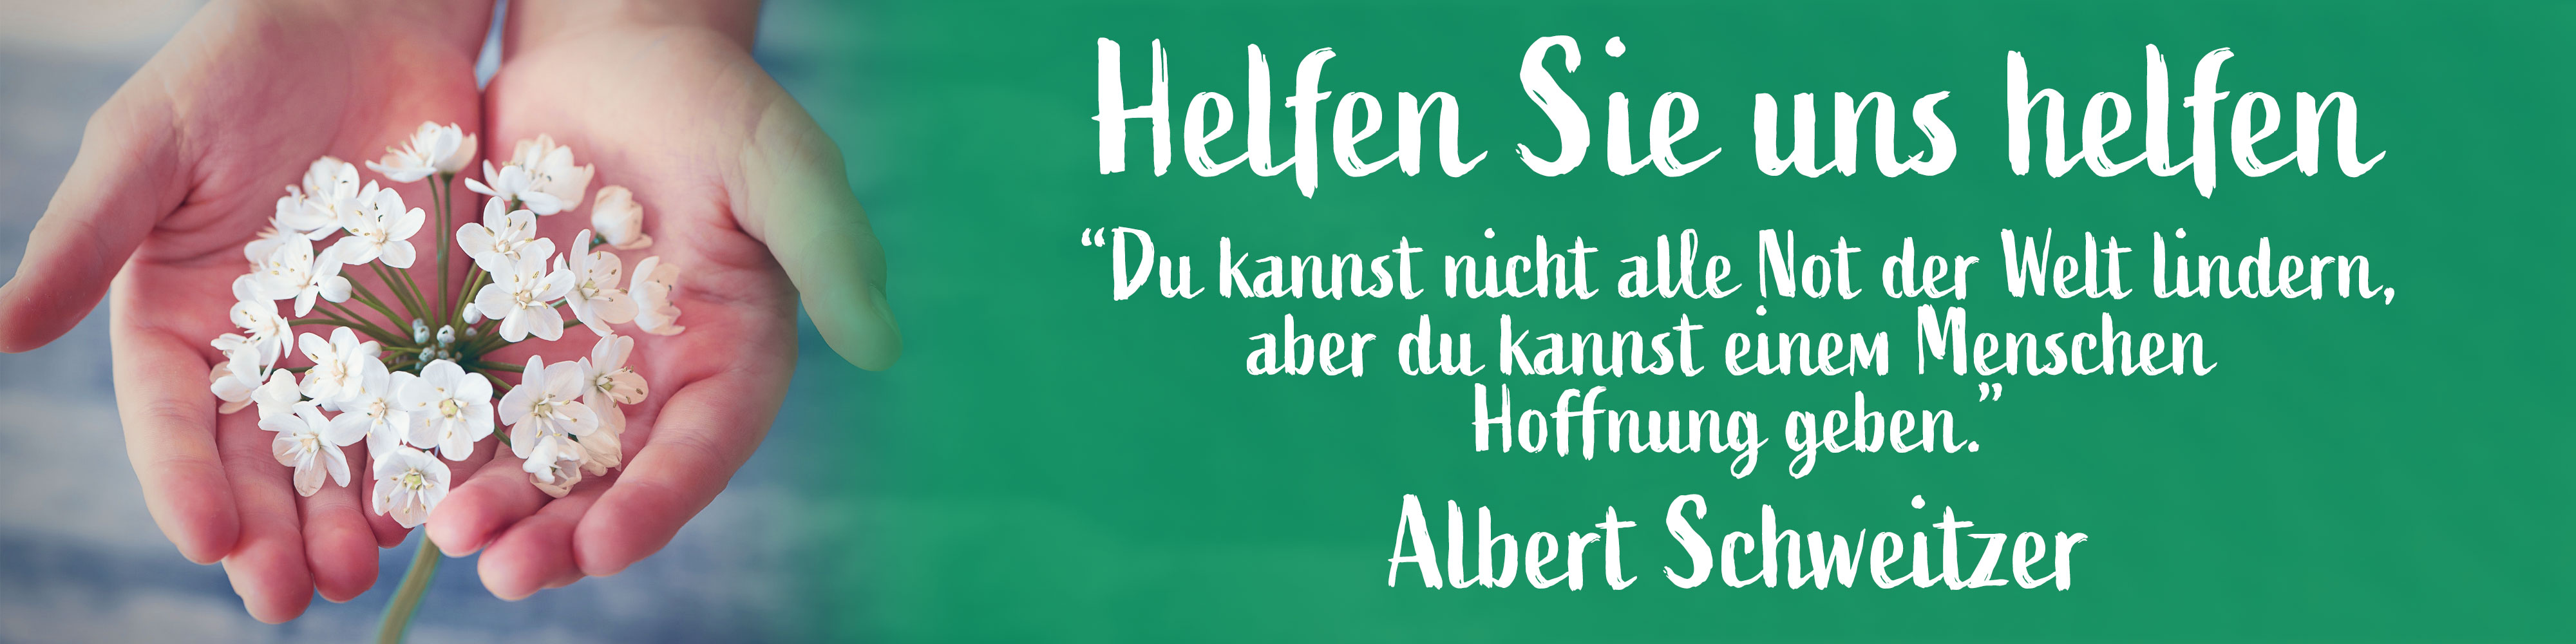 Albert Schweitzer Zitat - Spenden